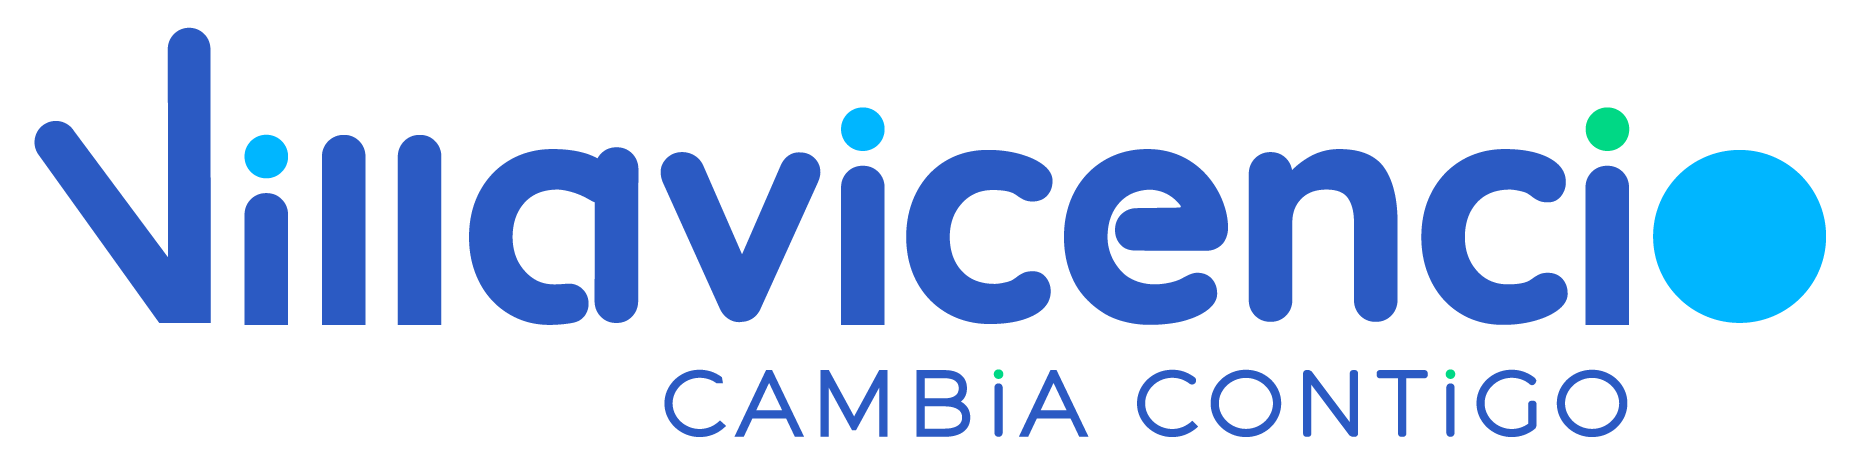 Ir al Sitio Web de Villavicencio - Gobierno de la Ciudad